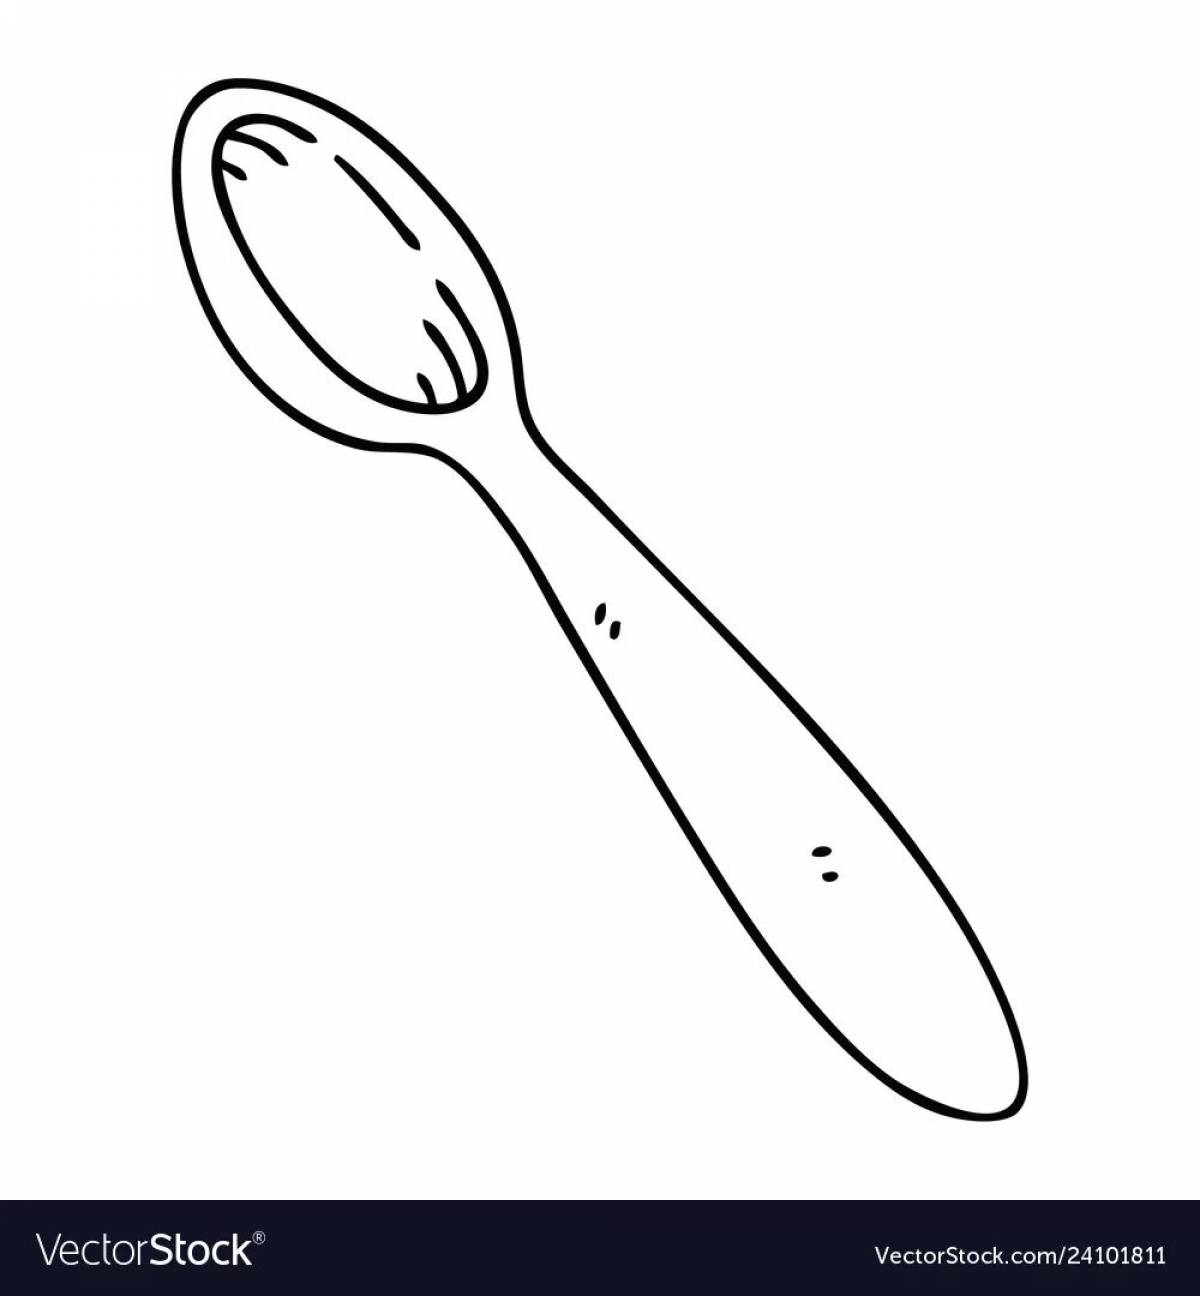 Children's wooden spoon #21